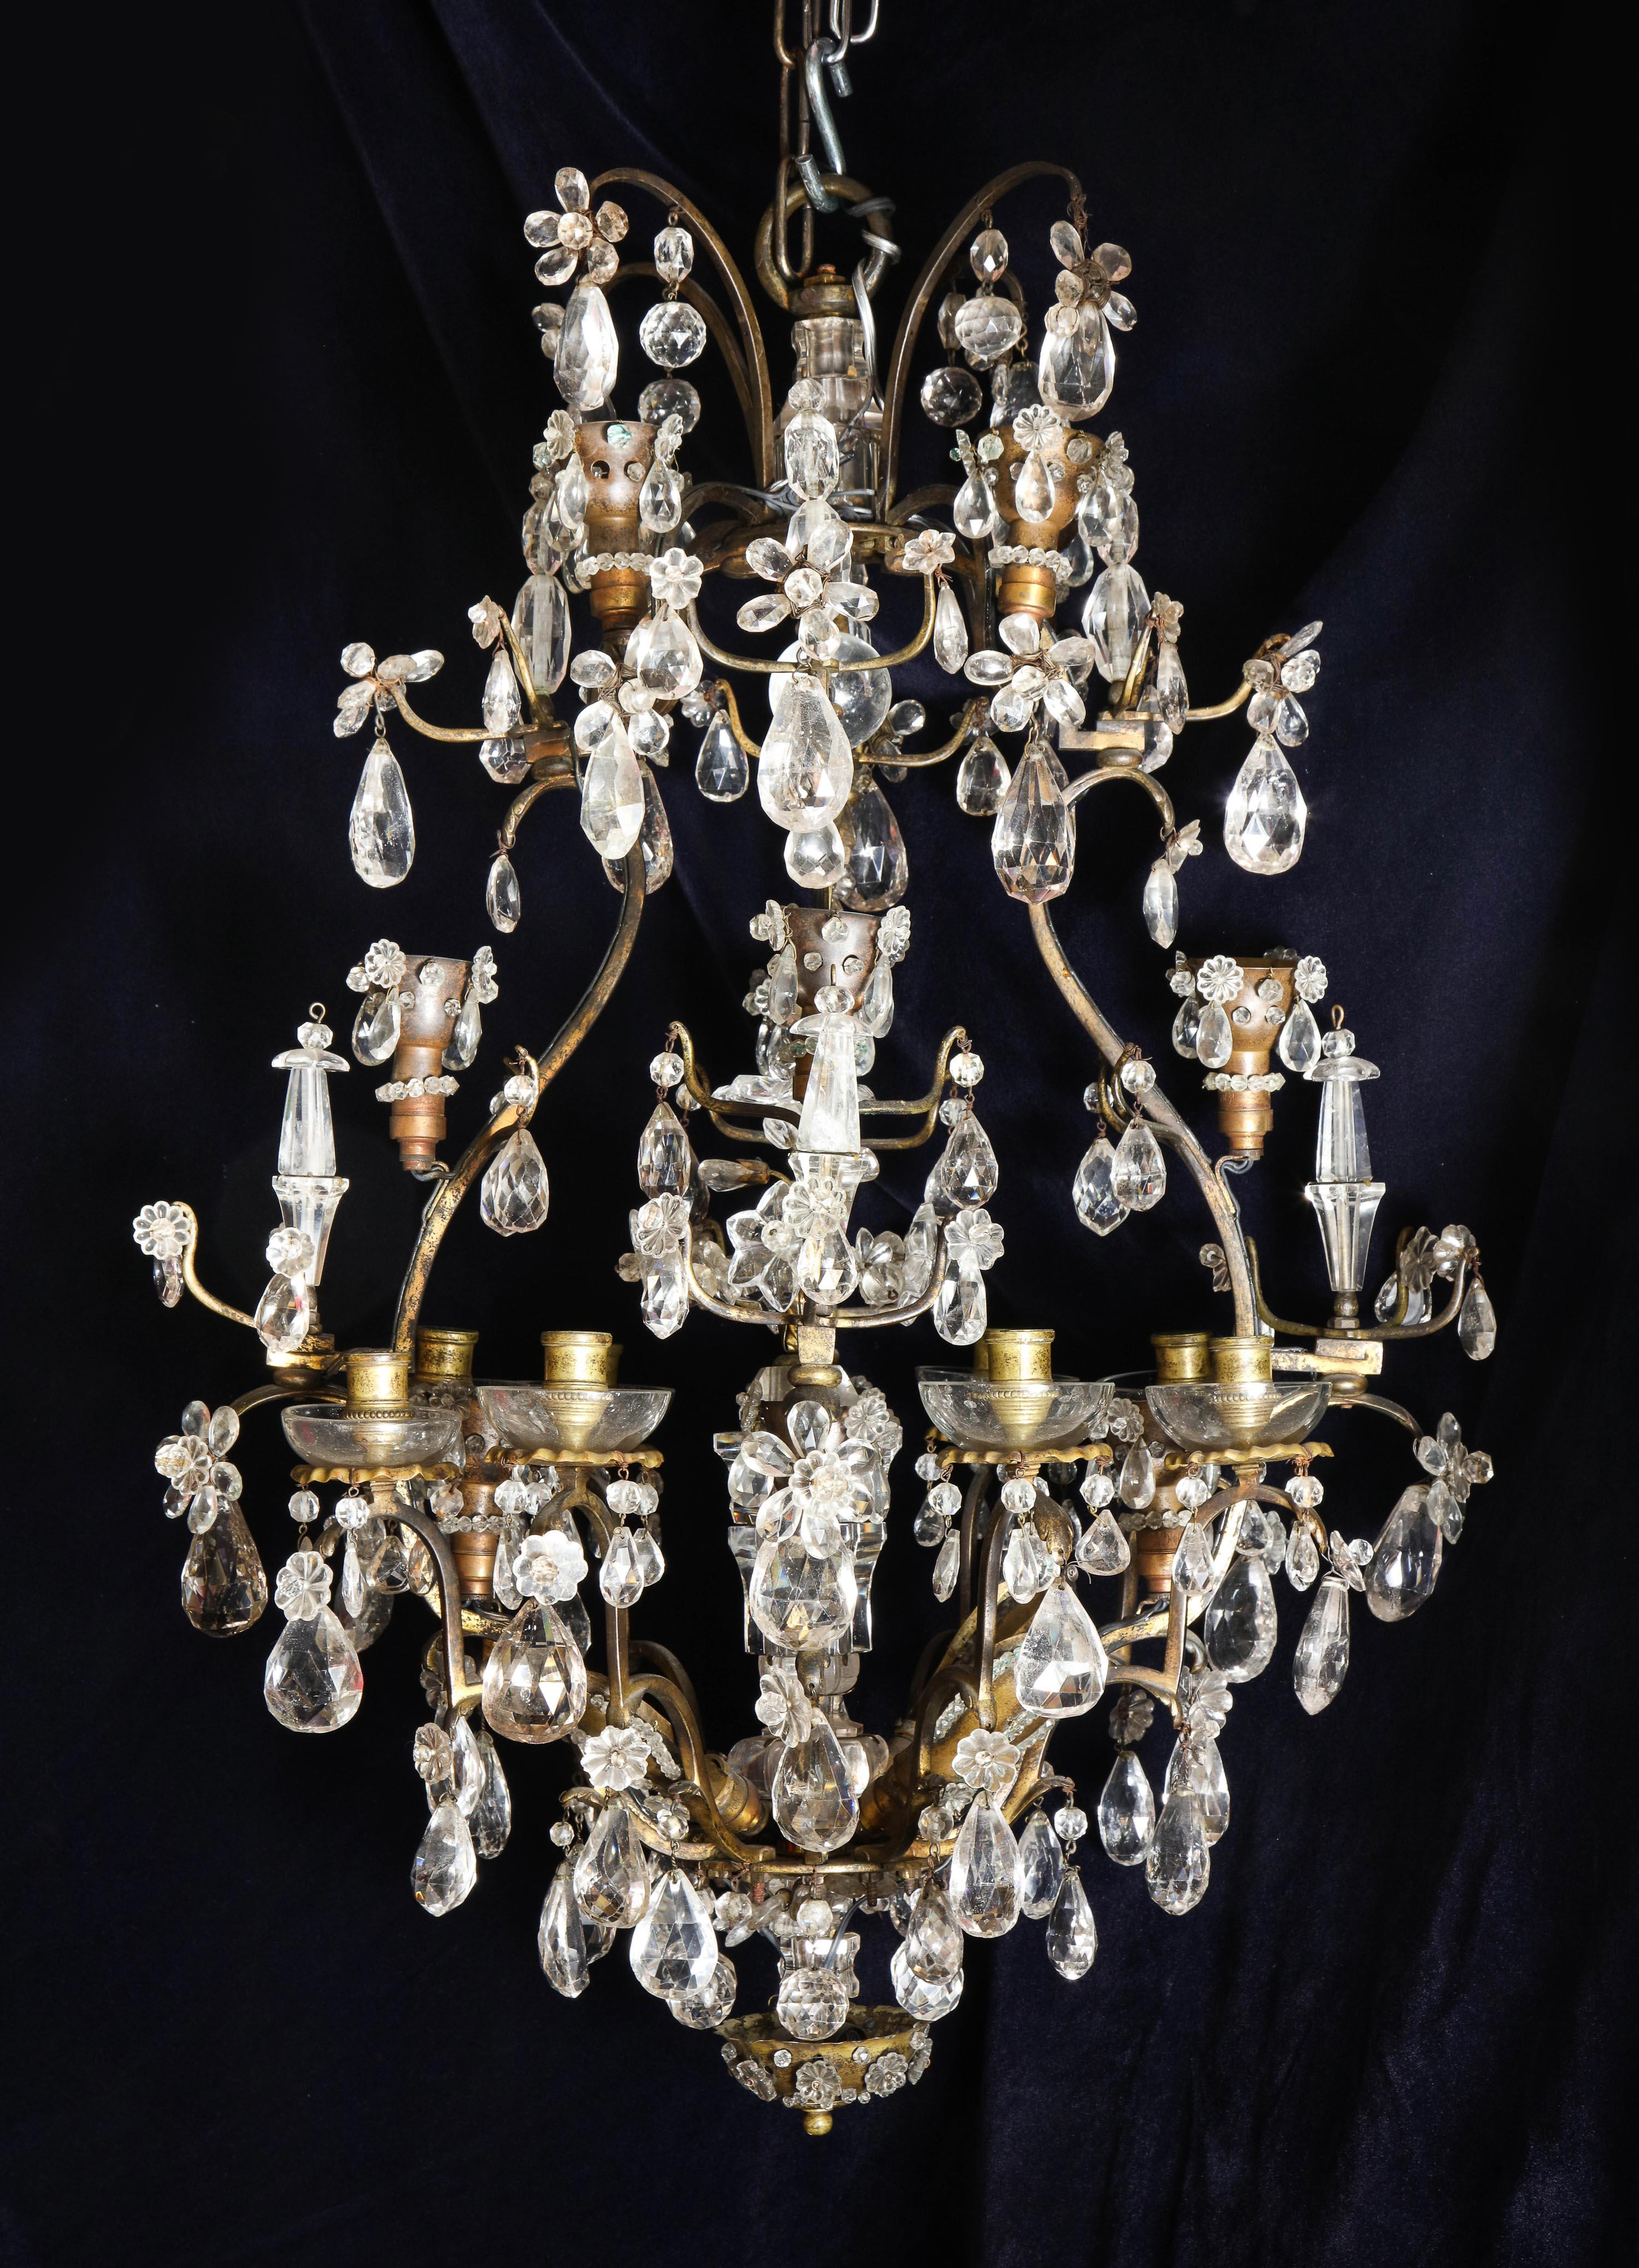 Un superbe lustre ancien Baguès français Louis XVI en bronze doré et cristal de roche taillé en forme de cage, avec plusieurs lumières, d'un artisanat exquis, embelli de fleurs en cristal de roche taillé, de prismes et orné d'un ornement floral en